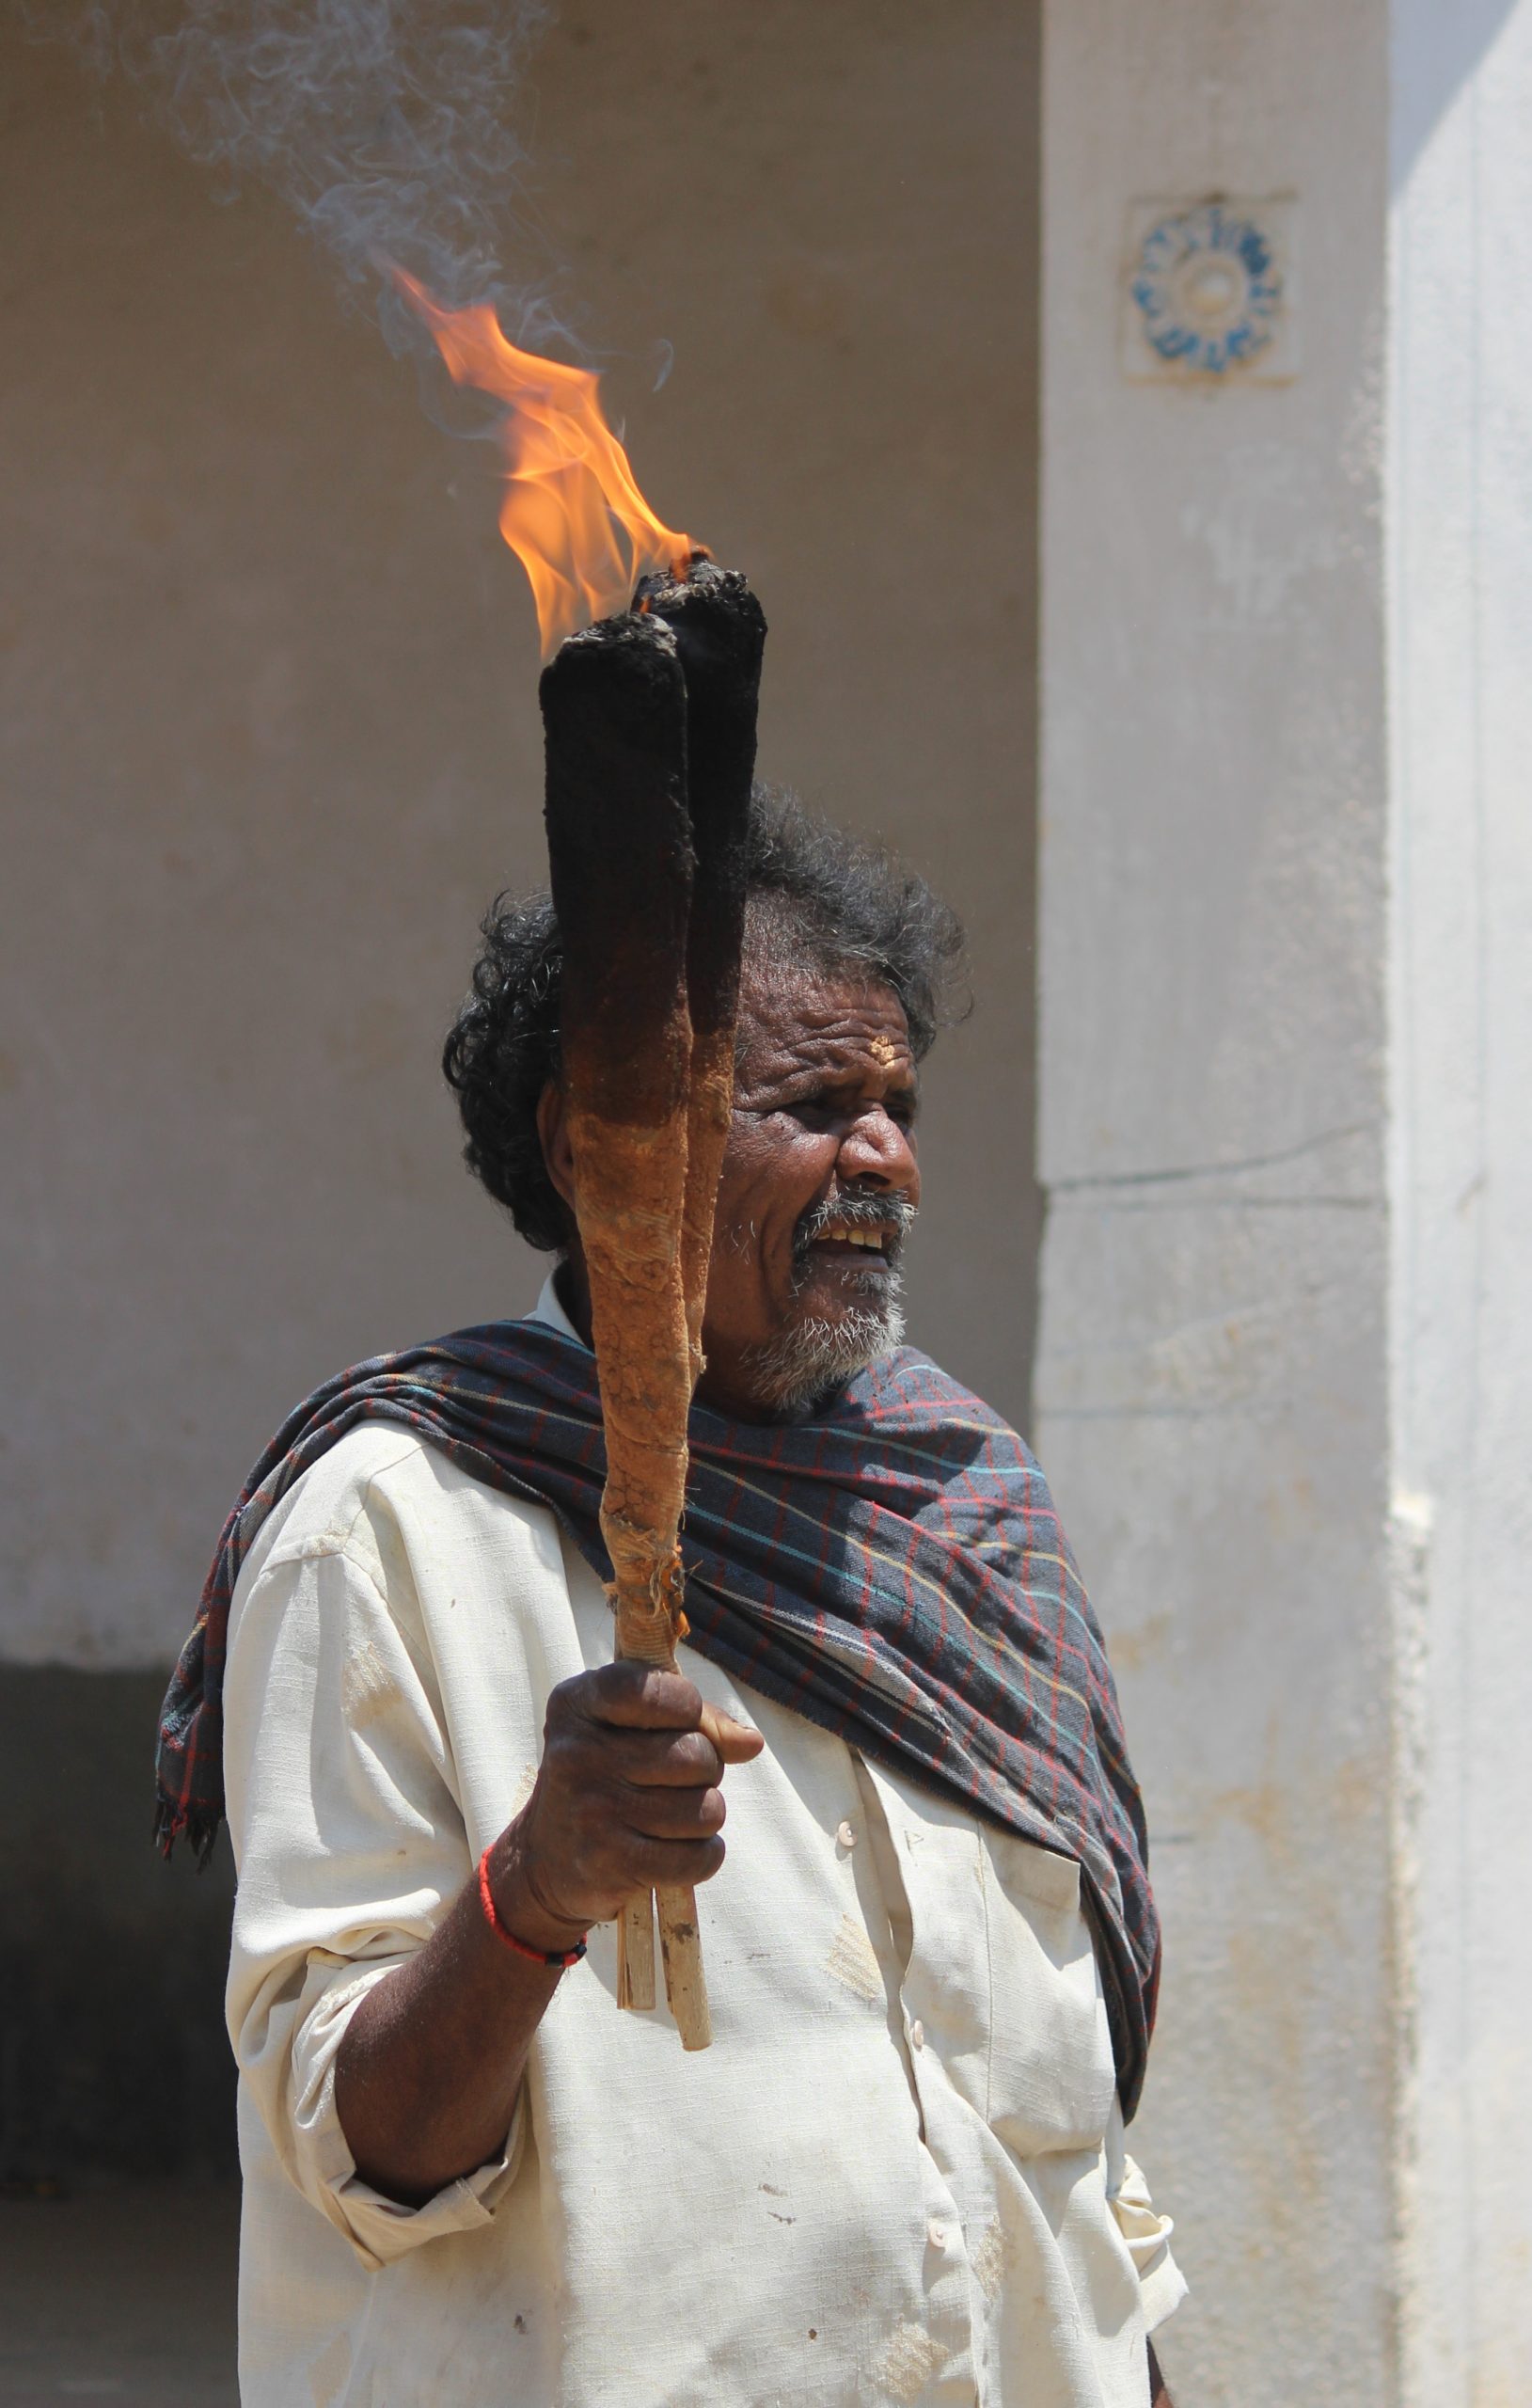 A man holding a fire torch